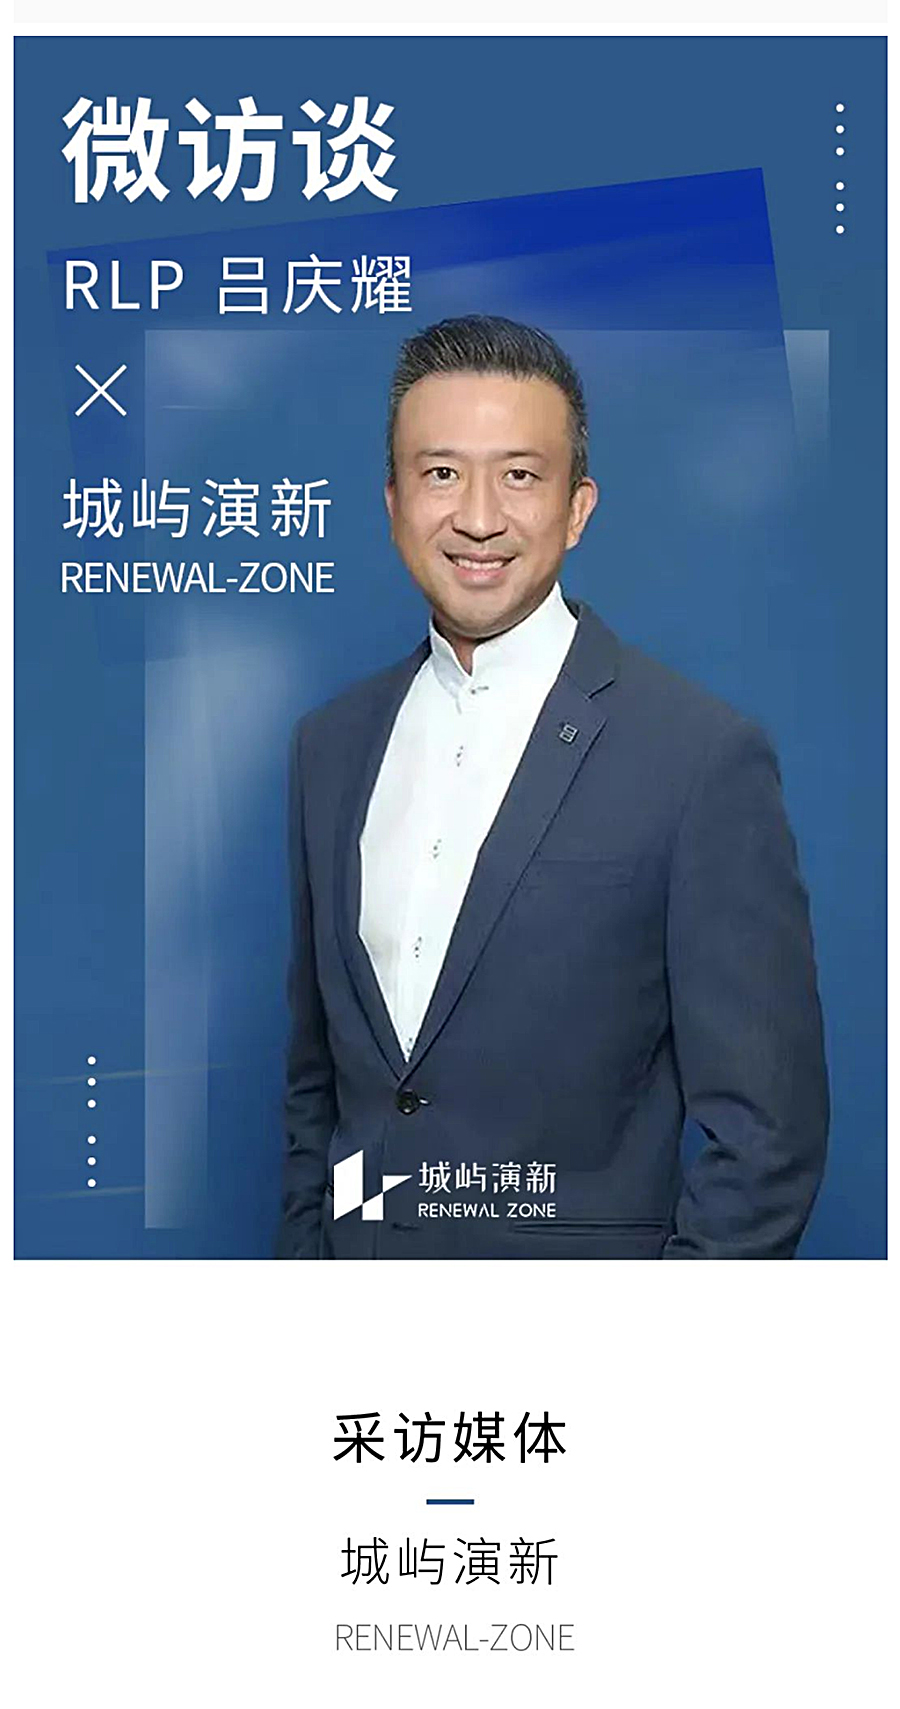 Renewal-Zone：RLP吕庆耀-∣-城市向上，生活向新，用以人为本的“健”筑设计拓展未来更多_0002_图层-3.jpg